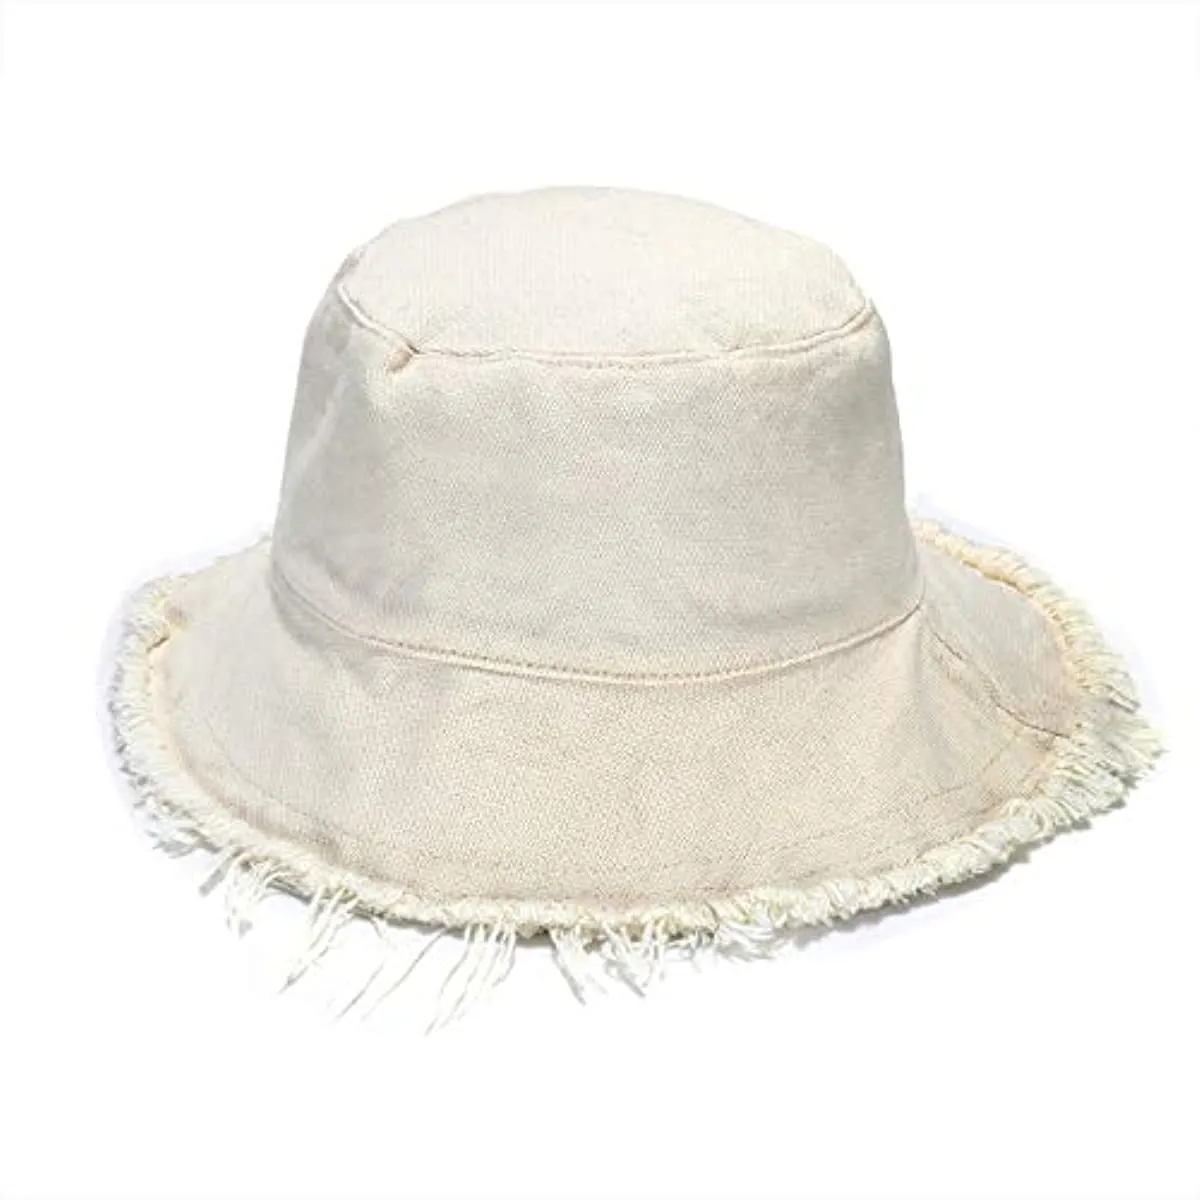 Chapeaux de seau pour femmes Chapeaux de soleil pour femmes Été Casual large bord coton seau chapeau plage vacances voyage accessoires seaux chapeau avec des cordes